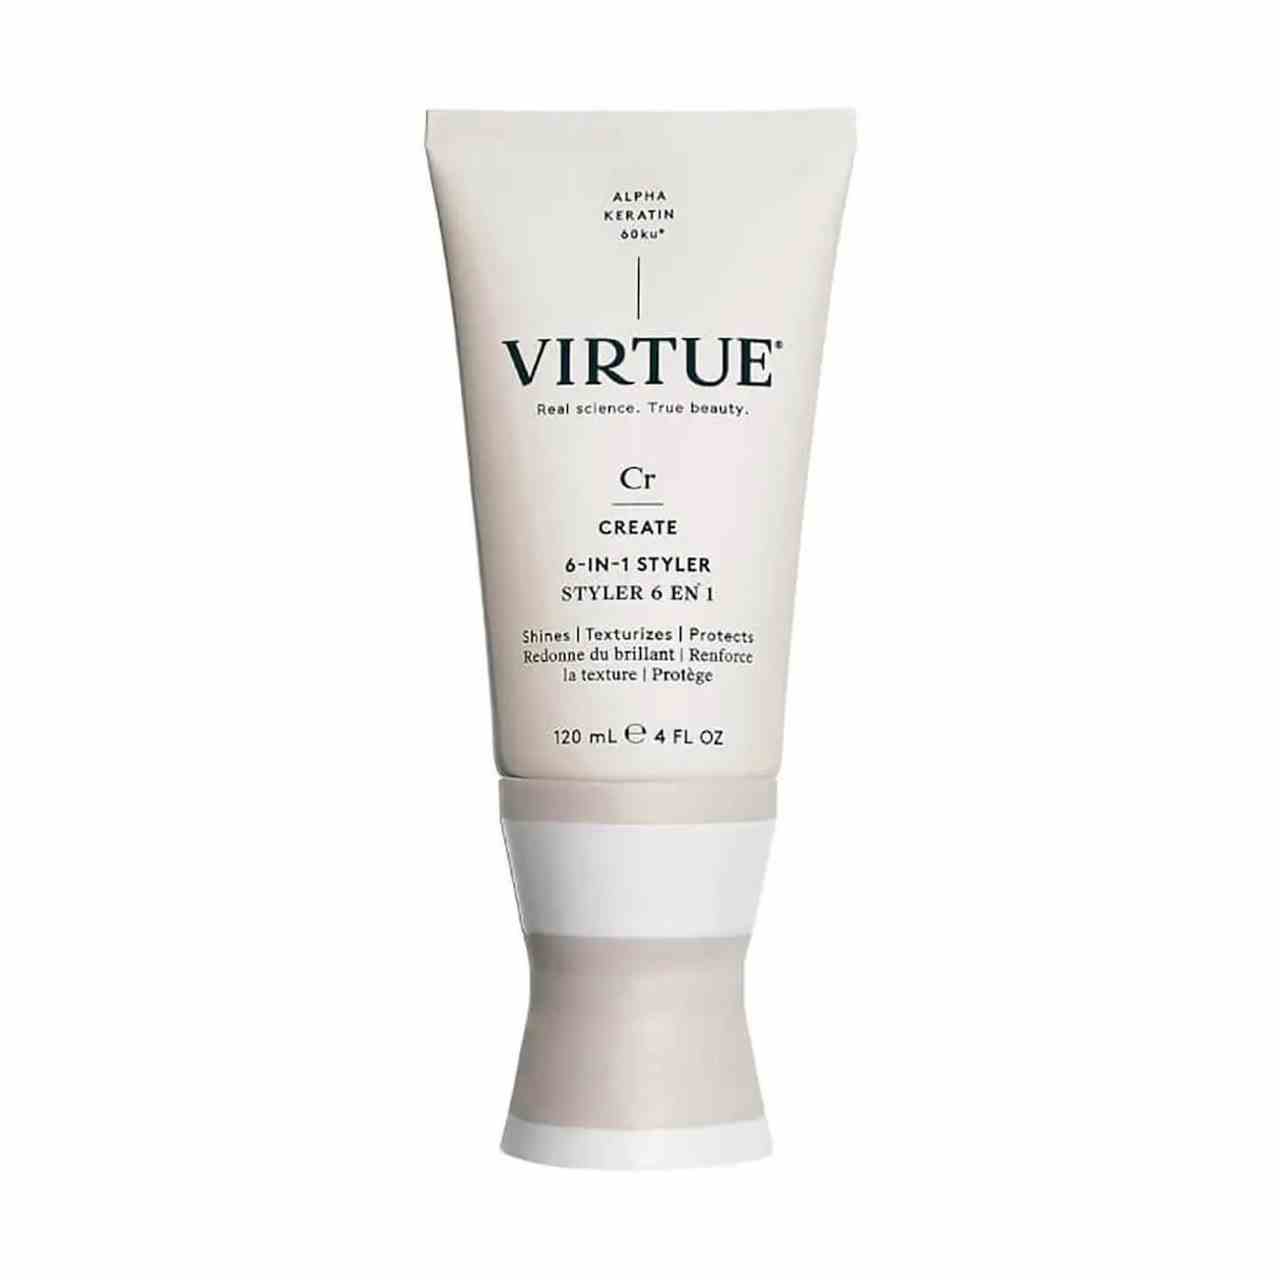 Virtue One for All 6-in-1 Styler Cremebeige Tube mit sanduhrförmiger Kappe auf weißem Hintergrund